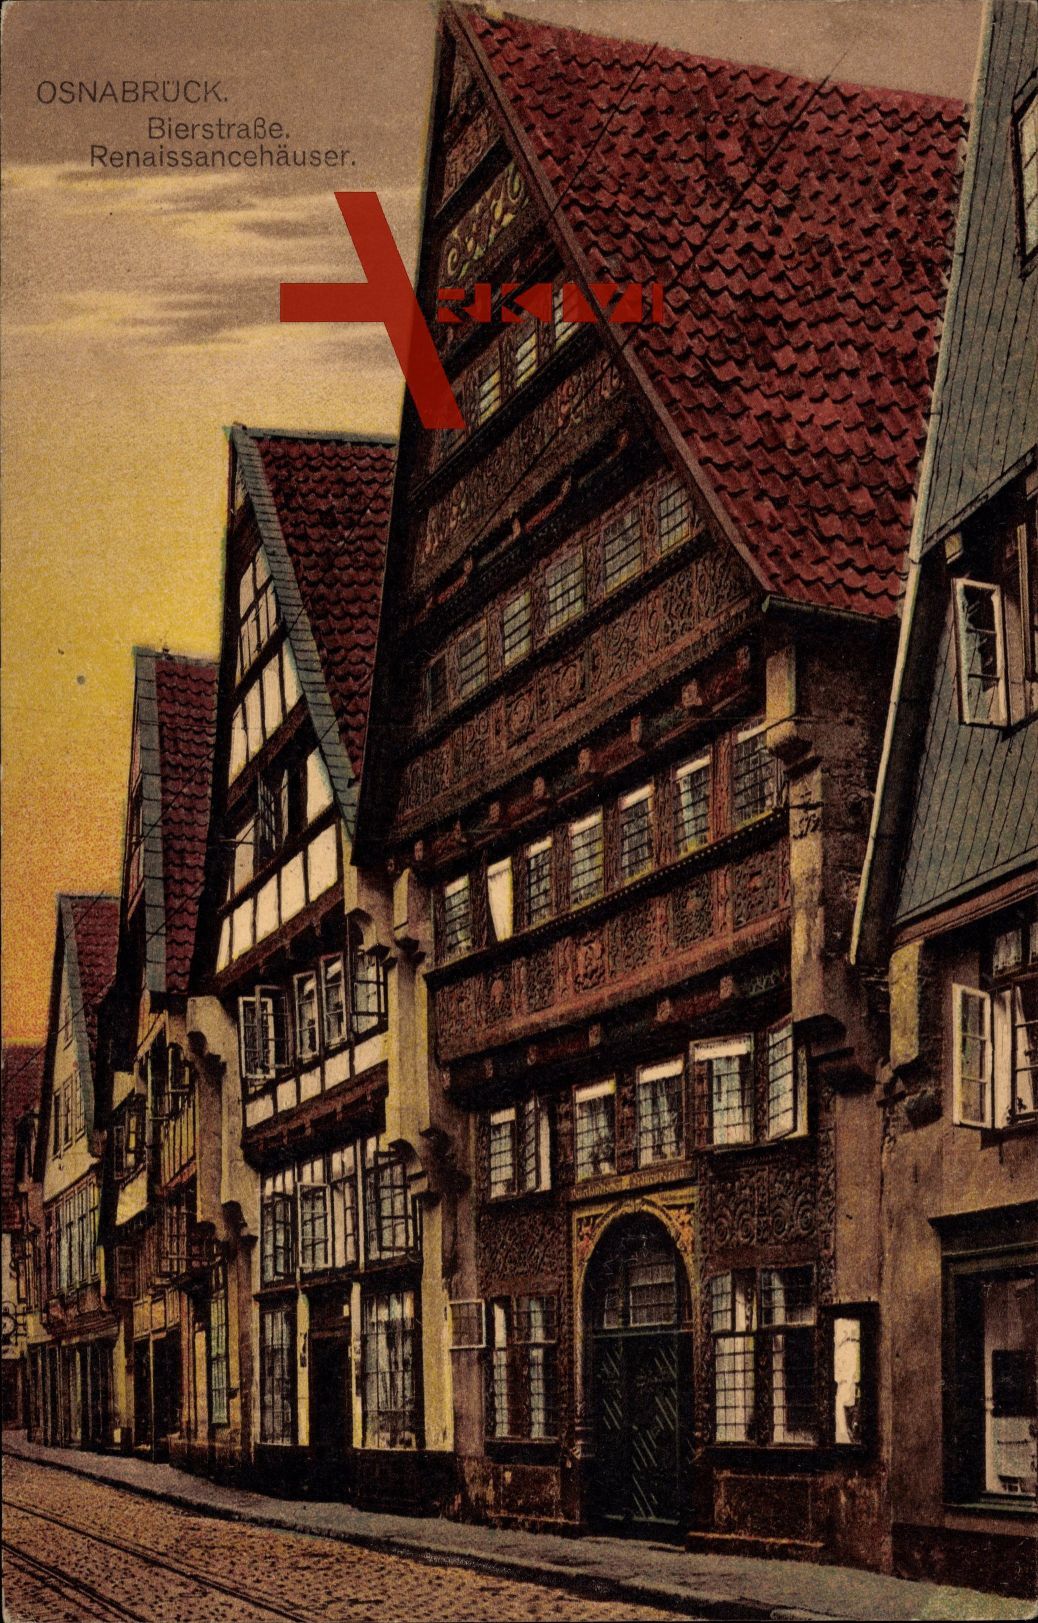 Osnabrück in Niedersachsen, Bierstraße, Renaissancehäuser